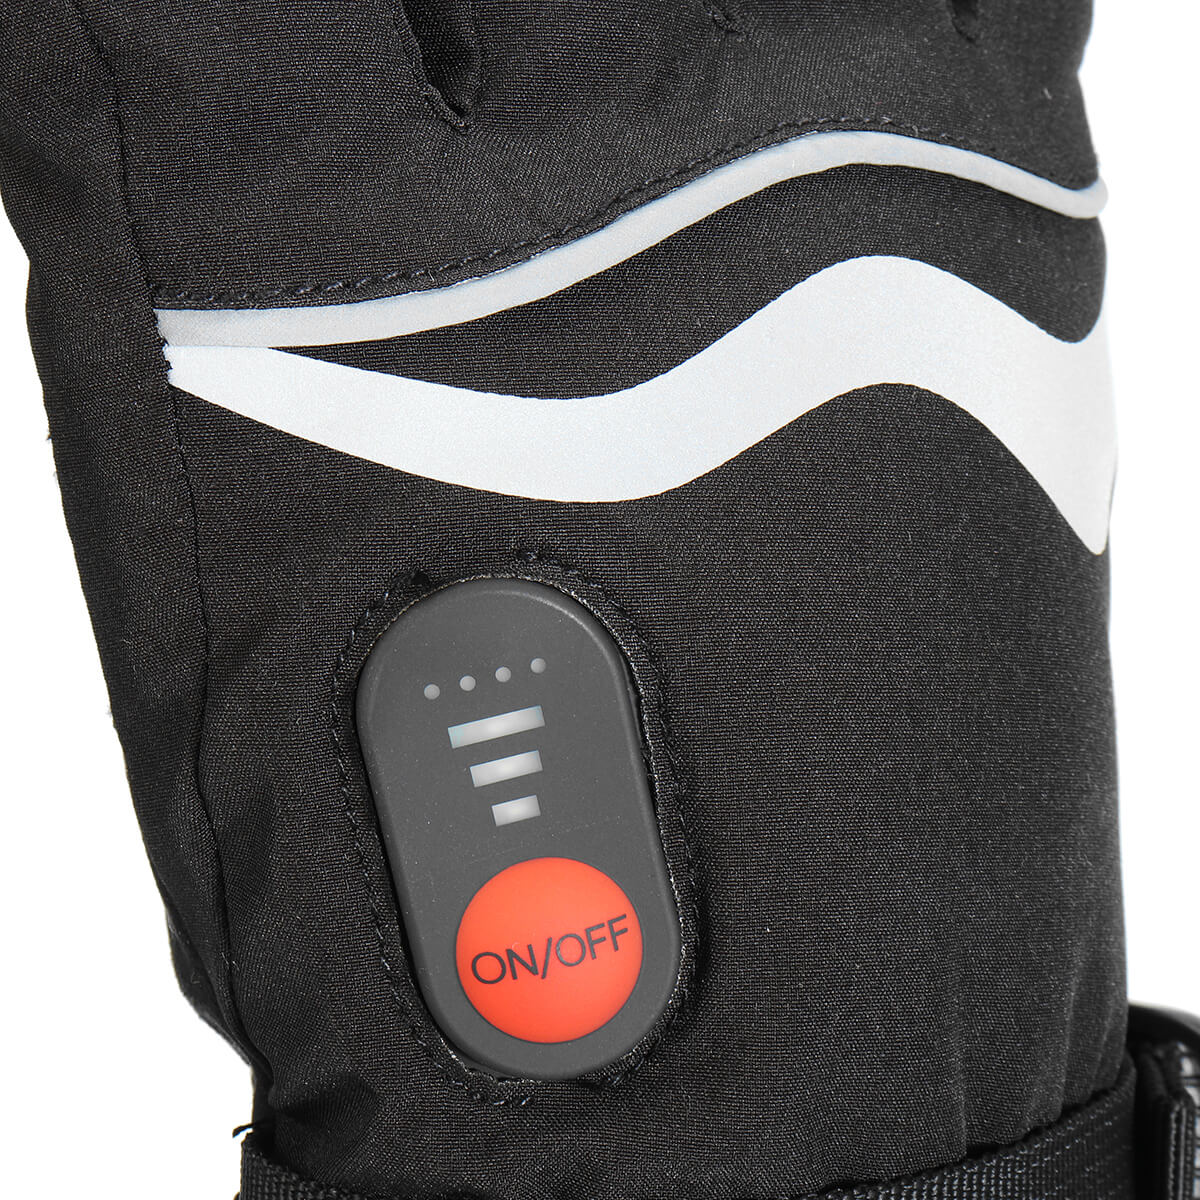 HG-02 Schwarze Elektrisch Beheizte Handschuhe, Wasserdicht Warm 1Paar